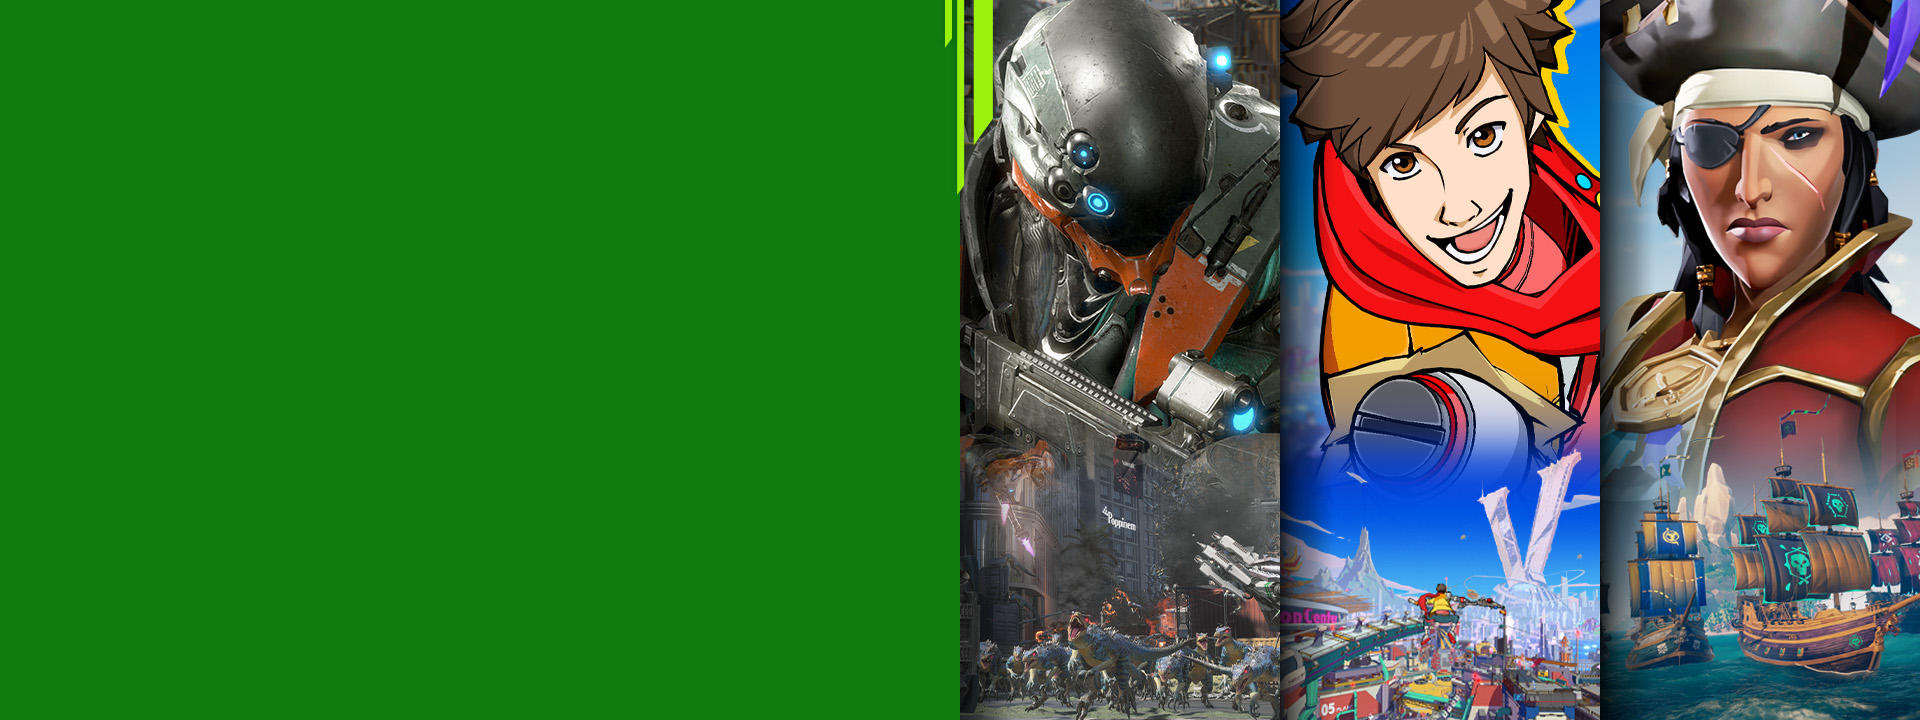 Xboxos játékok karakterei elölnézetből az Exoprimal, a Hi-Fi Rush és a Sea of Thieves játékokból.